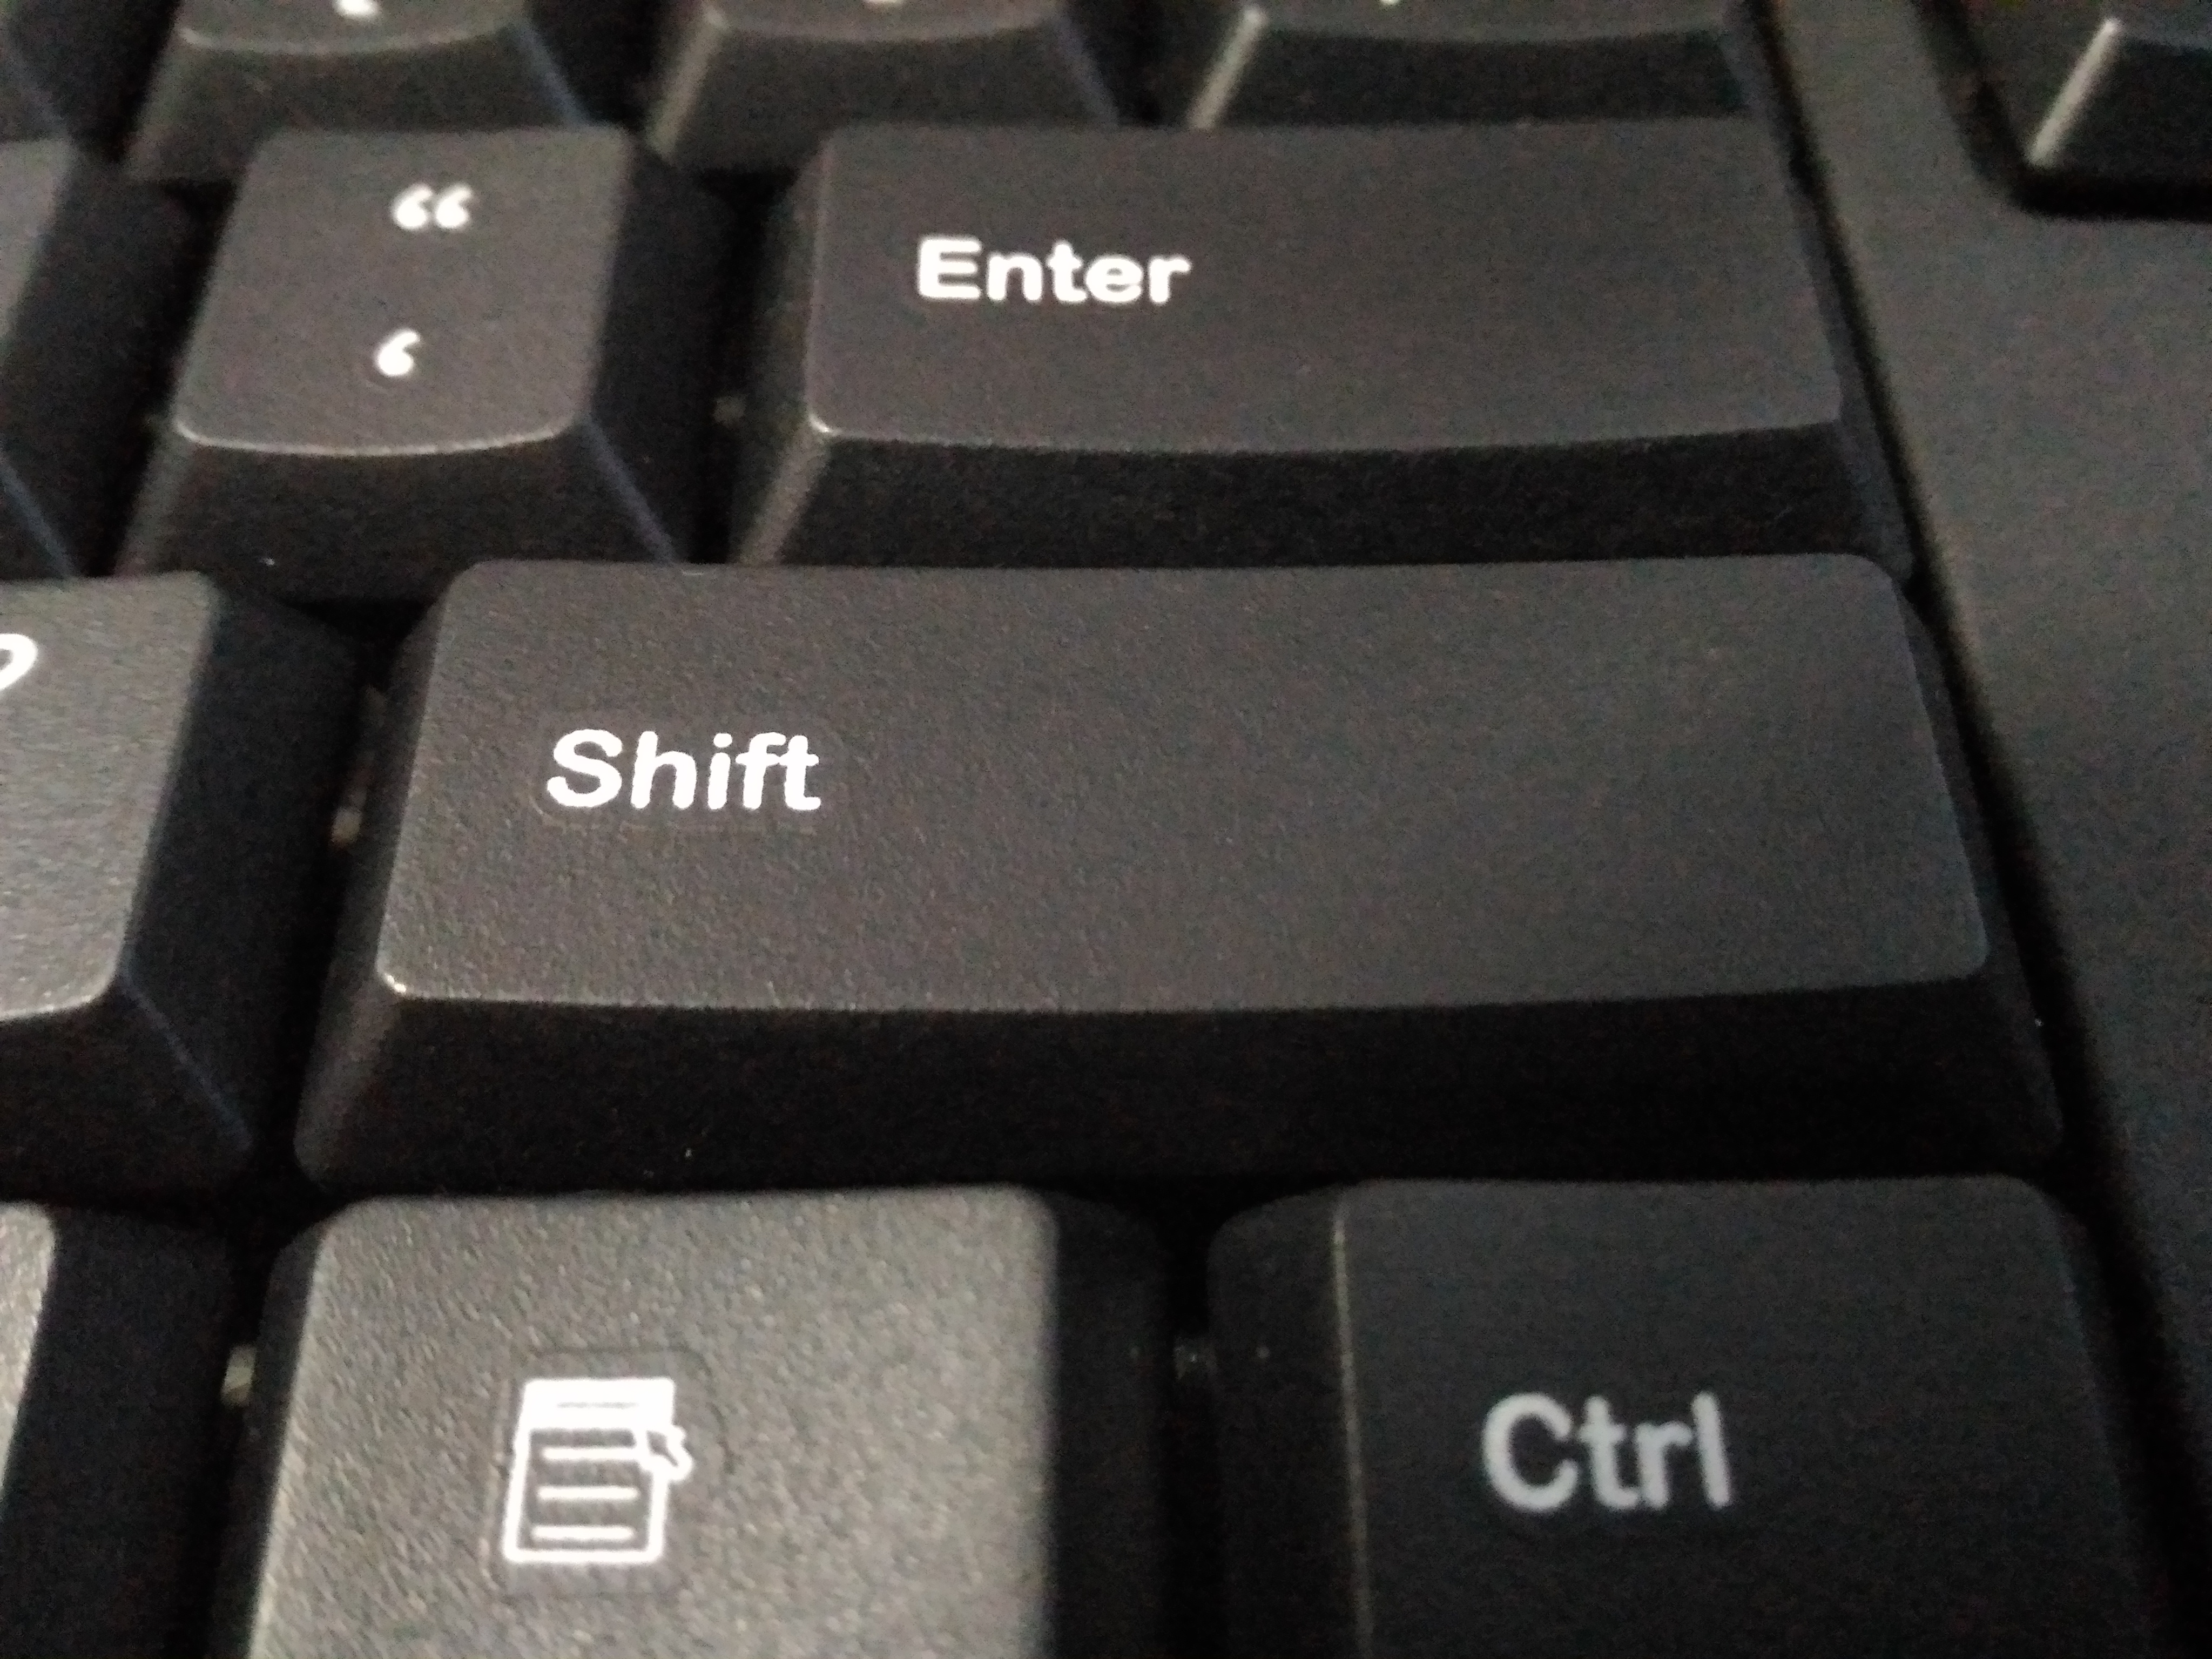 Enter shift клавиши. Шифт на клавиатуре. Кнопка шифт на клавиатуре. Shift на клавиатуре компьютера. Кнопка шифт на клавиатуре компьютера.